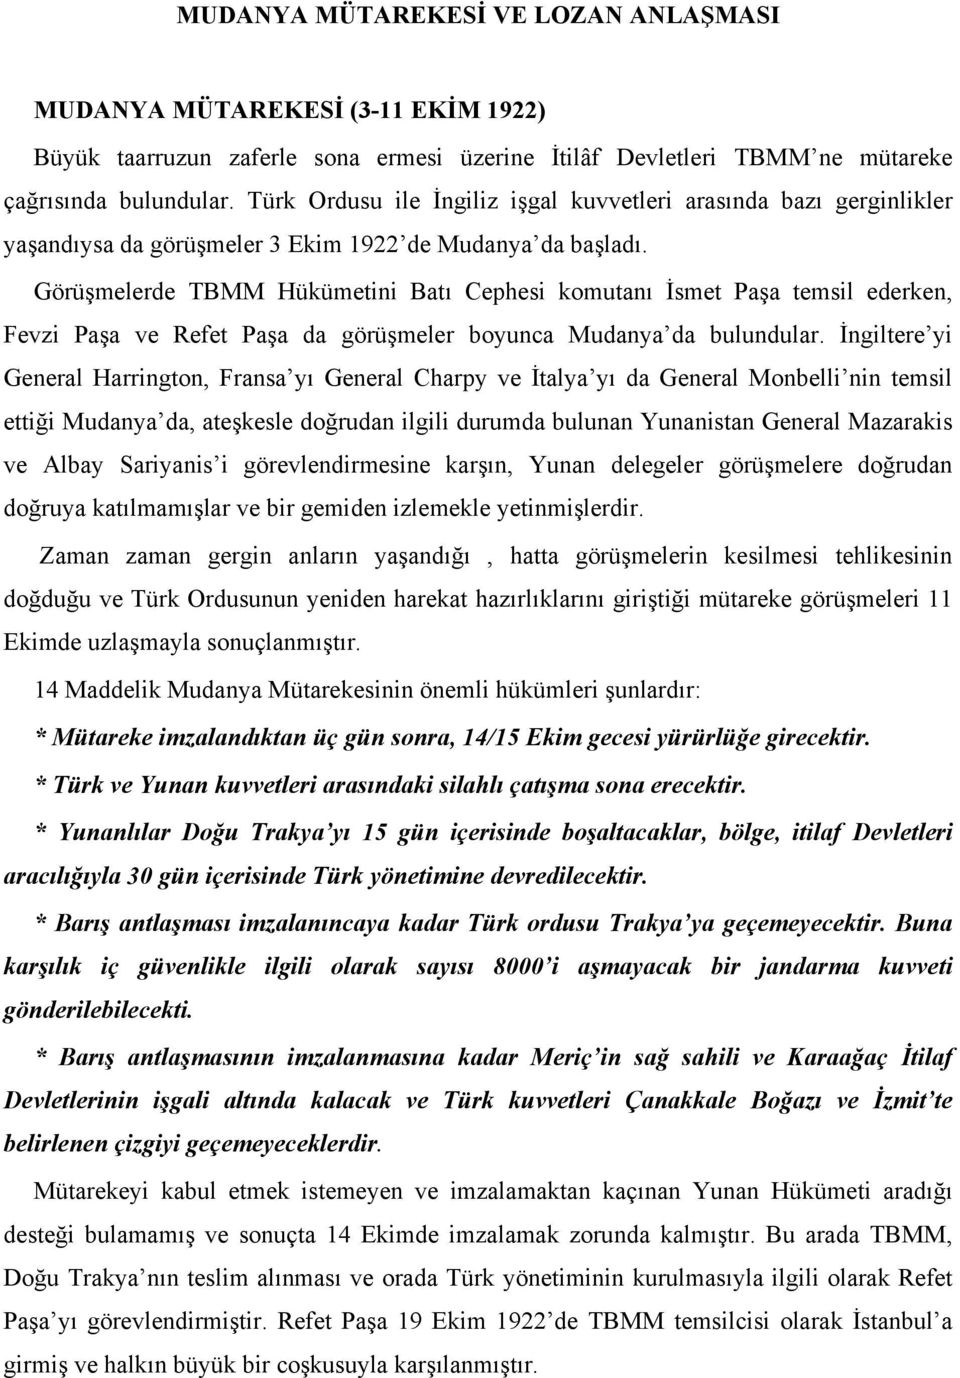 Görüşmelerde TBMM Hükümetini Batı Cephesi komutanı İsmet Paşa temsil ederken, Fevzi Paşa ve Refet Paşa da görüşmeler boyunca Mudanya da bulundular.